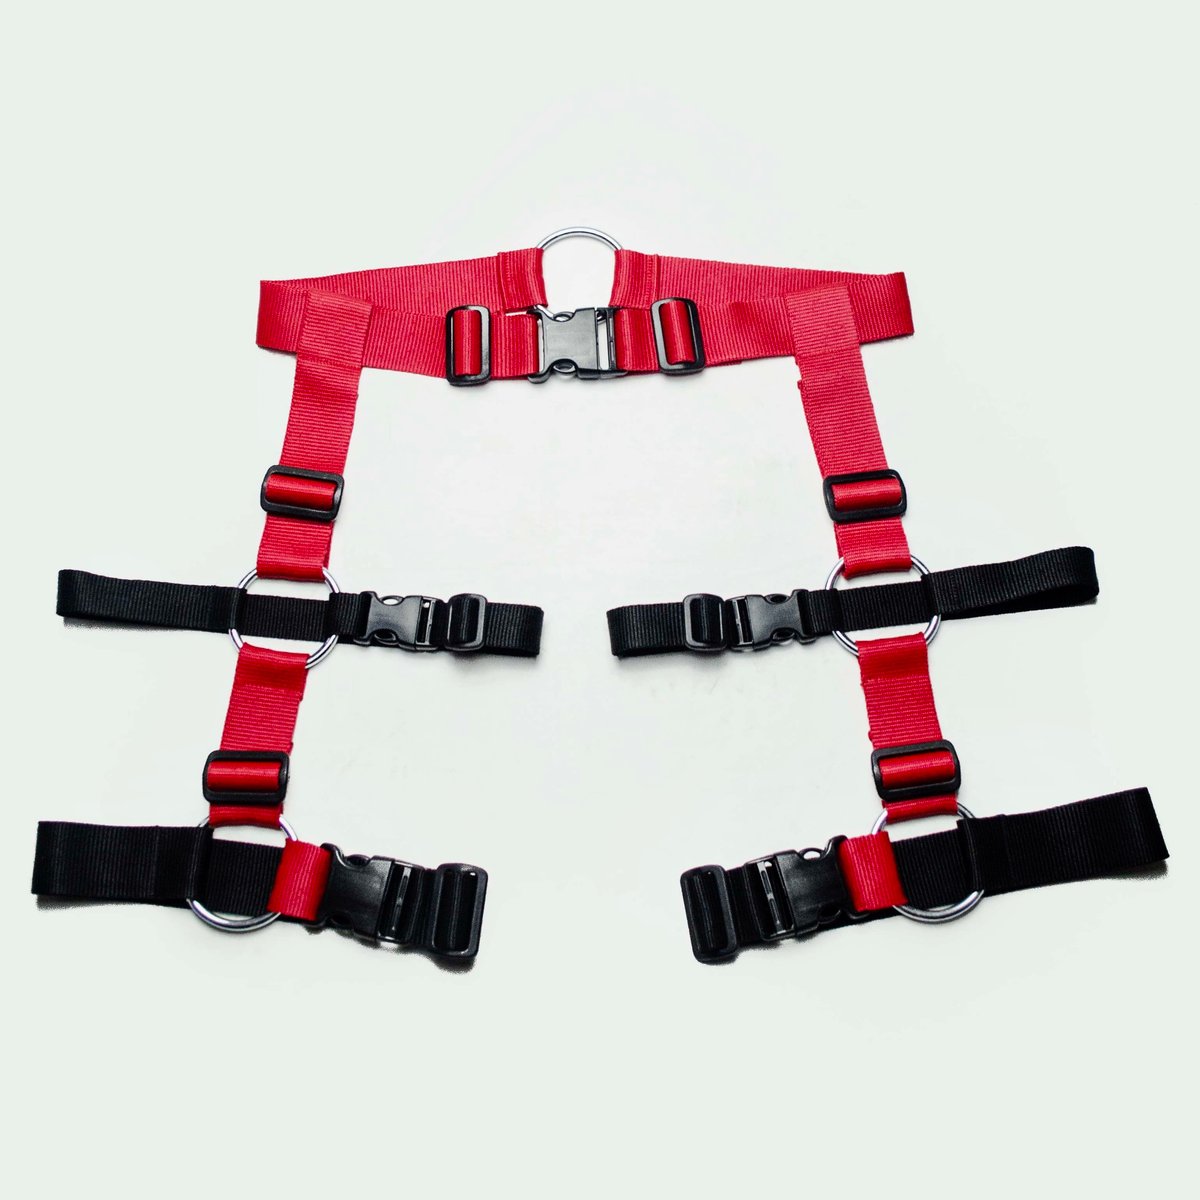 https://assets.bigcartel.com/product_images/03945db4-5b62-459c-b9b3-f42f78b7c470/tatical-leg-harness-ty_01-red-black.jpg?auto=format&fit=max&w=1200